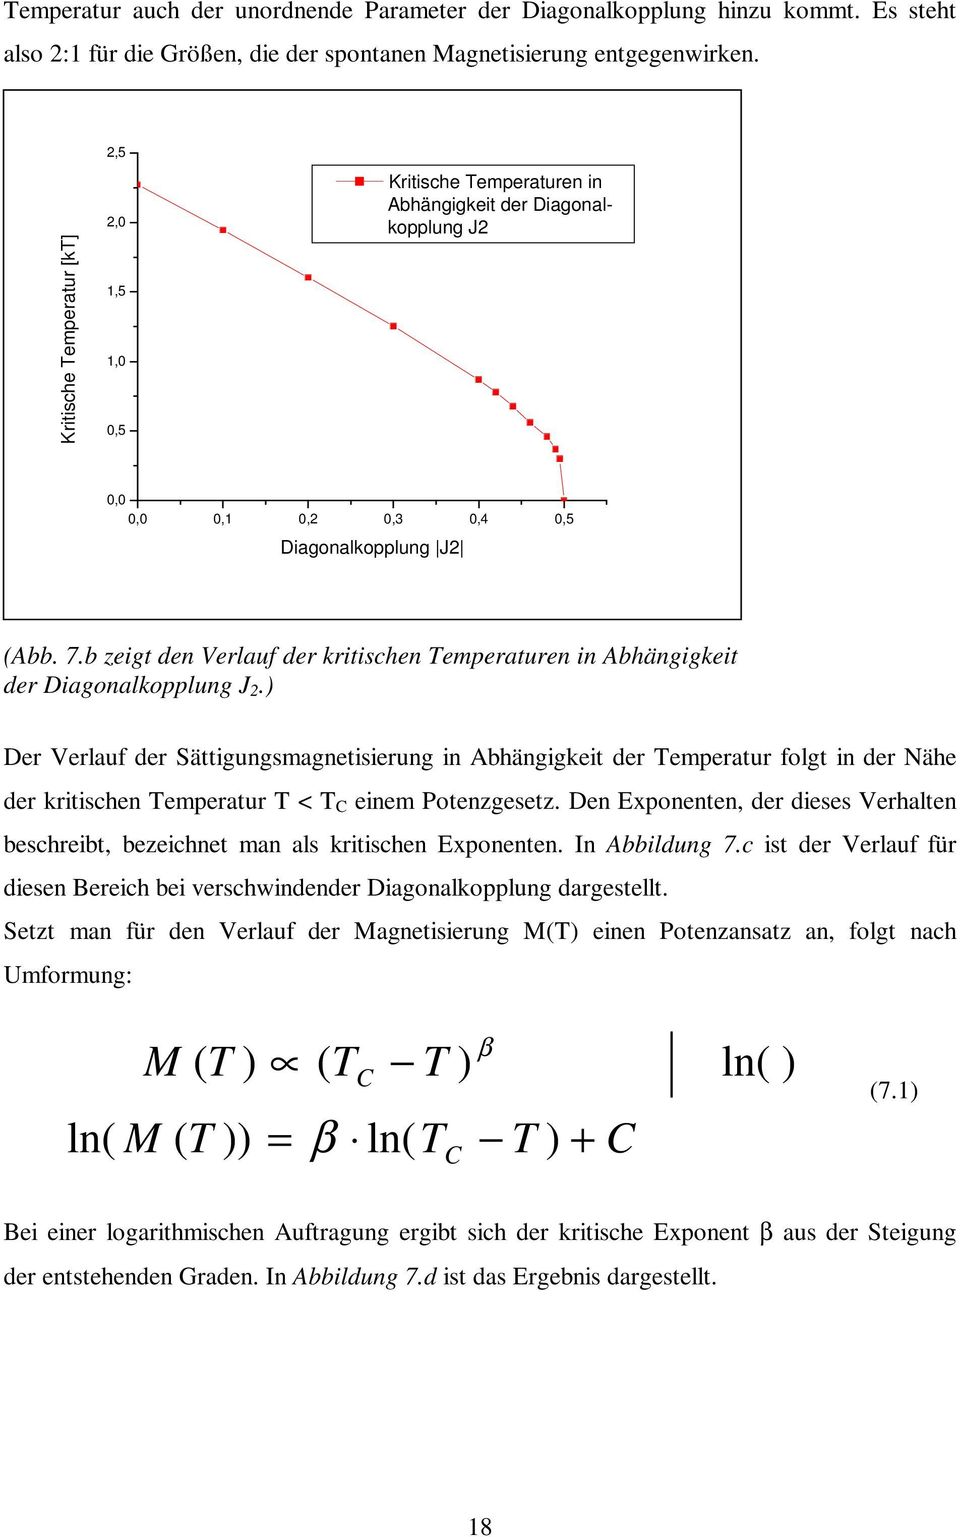 b zeigt den Verlauf der kritischen Temperaturen in Abhängigkeit der Diagonalkopplung J.